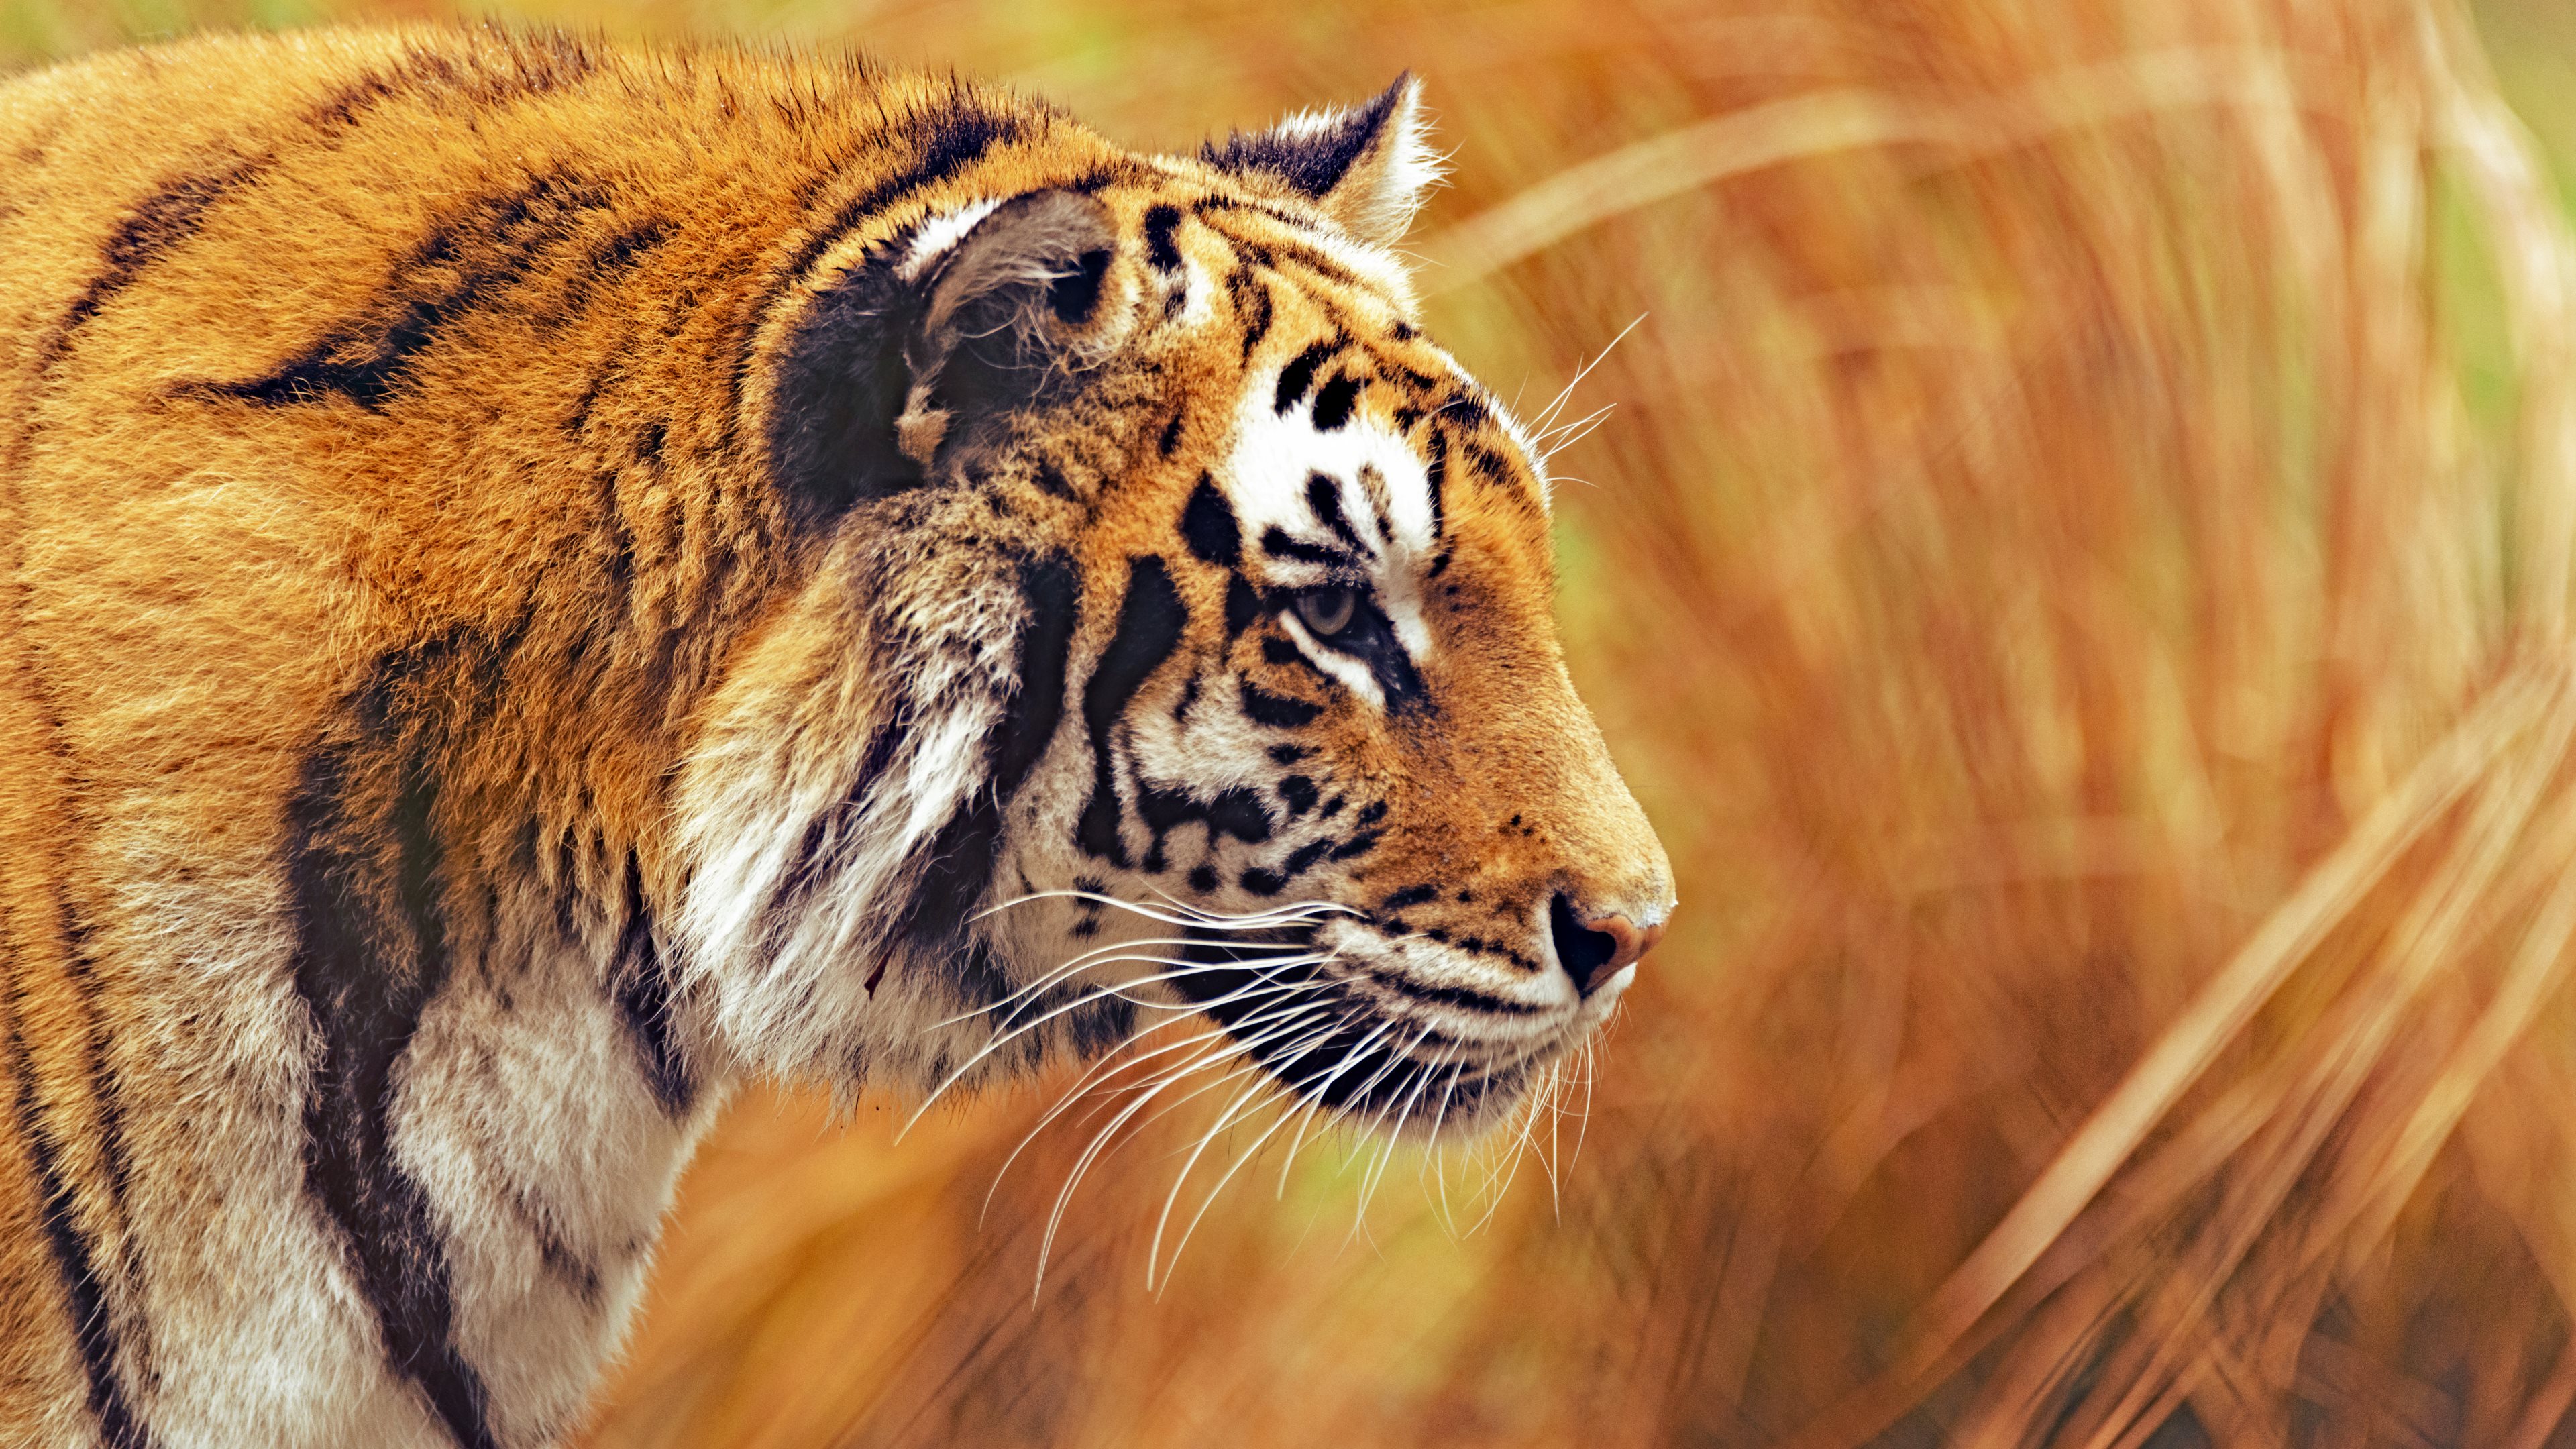 Beautiful Tiger 4K UHD 16:9 3840x2160 Wallpaper